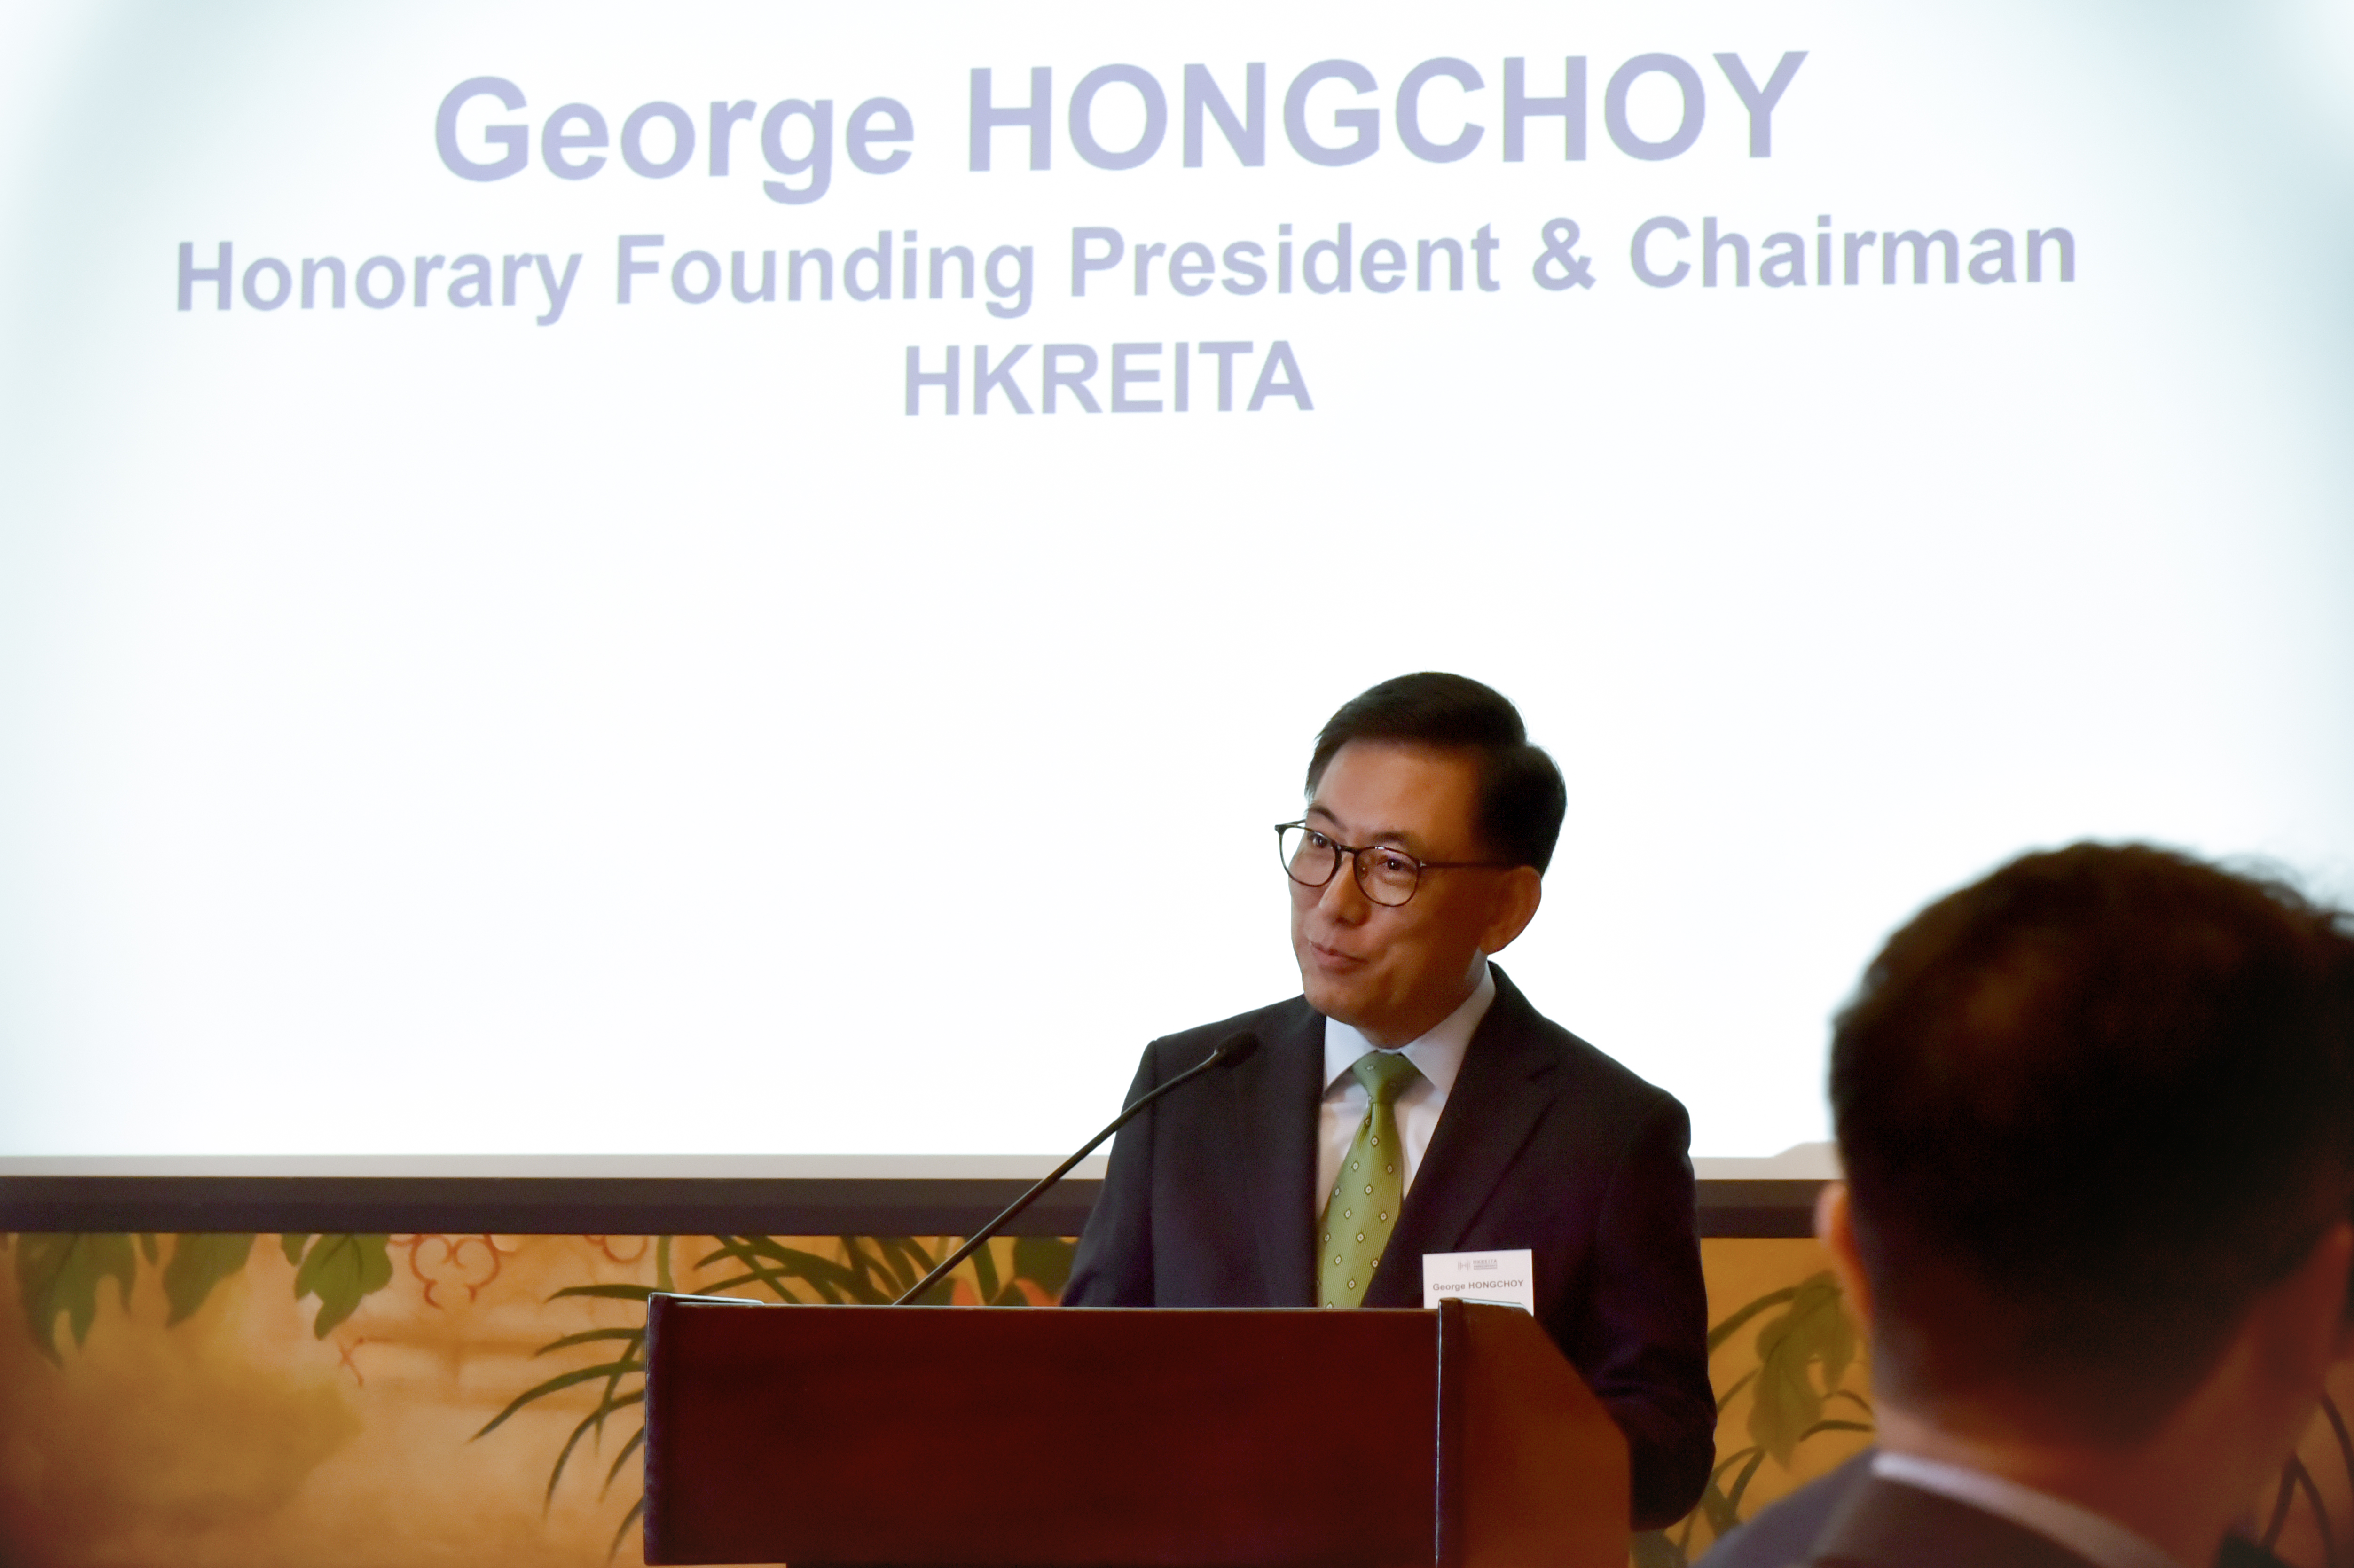 香港房託基金協會主席王國龍於歡迎辭中表示，協會的目標是為業界建立一個協作平台，共同促進香港房地產投資信託基金市場的整體發展，培養一個充滿活力和領先的亞太區房託基金市場。